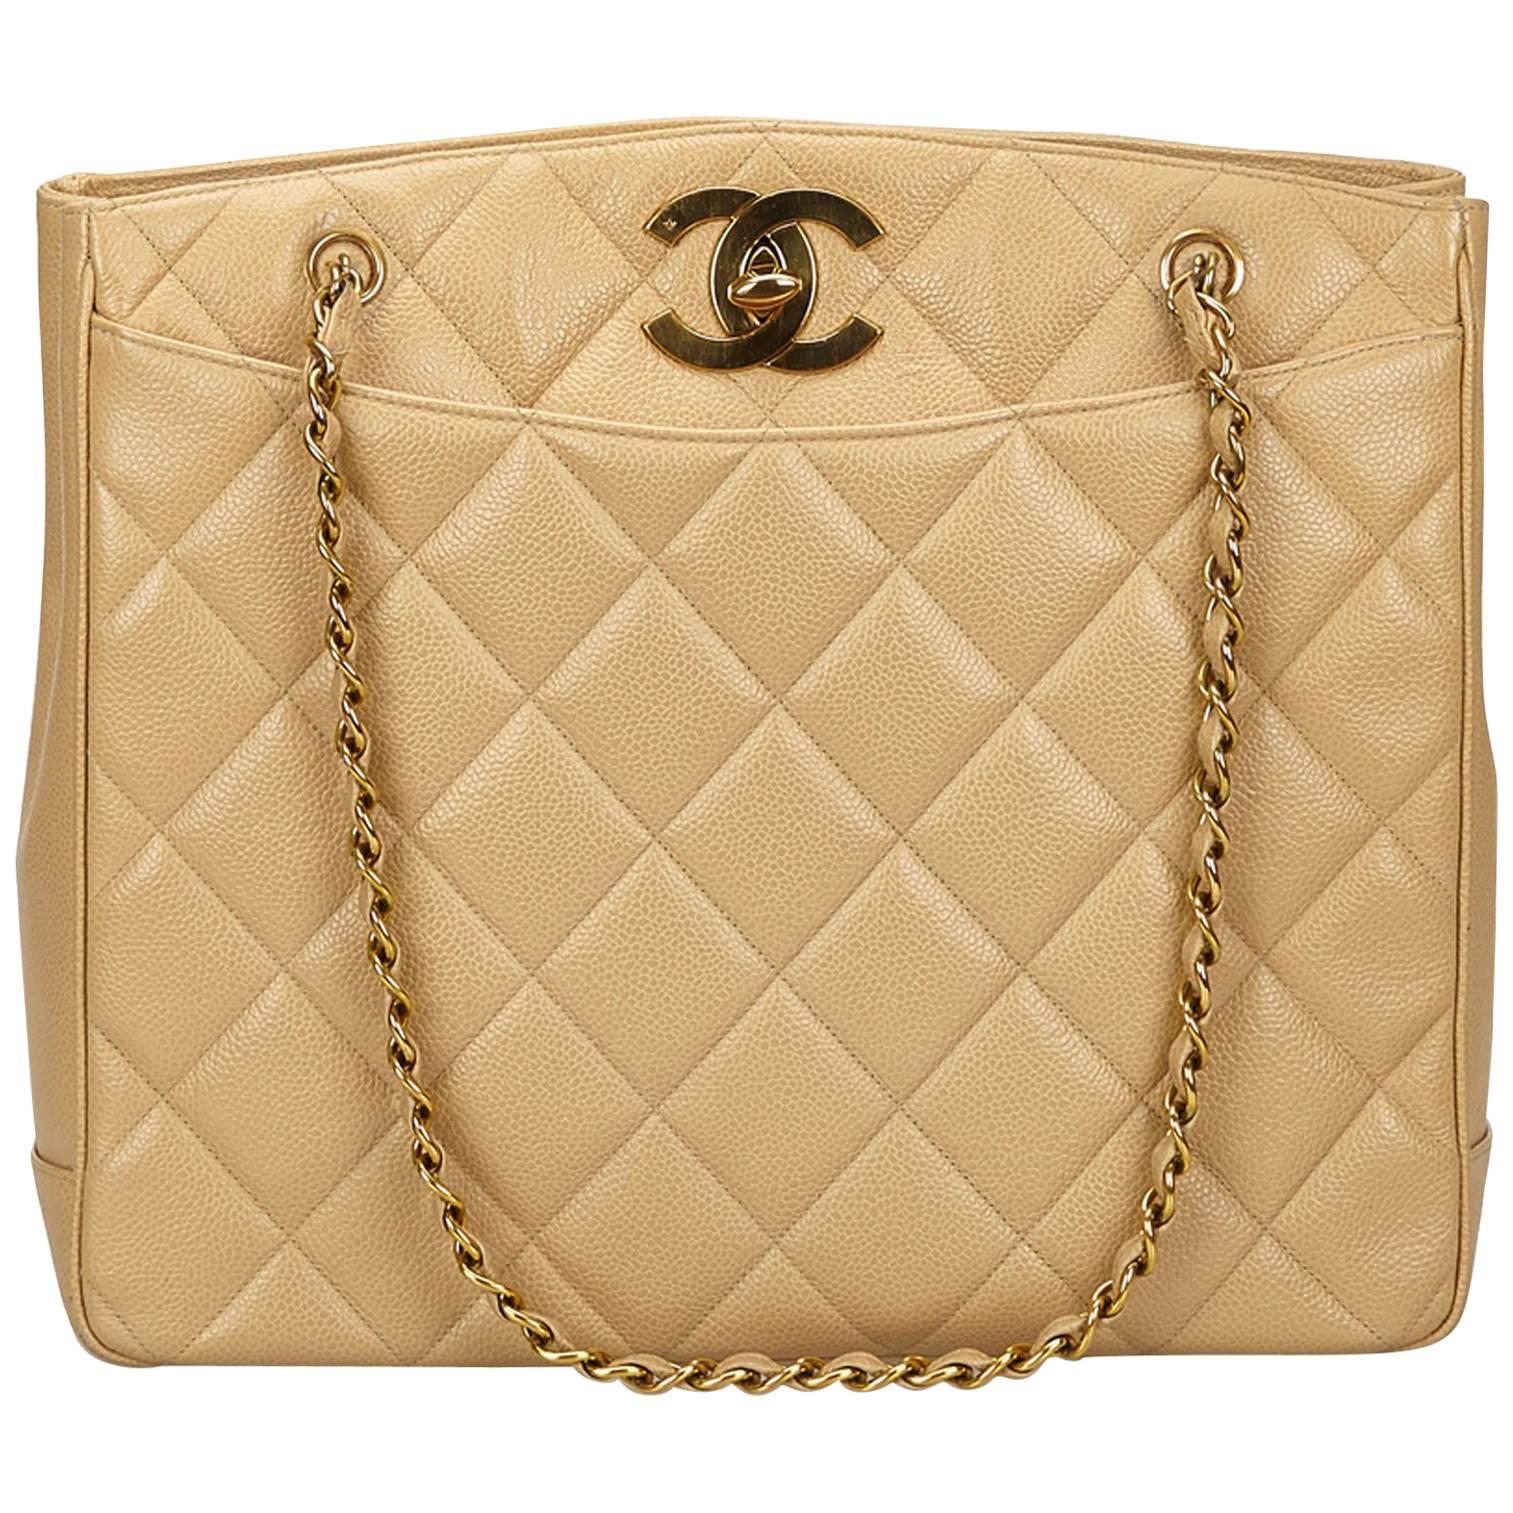 Chanel Beige Caviar Leather Shoulder Bag